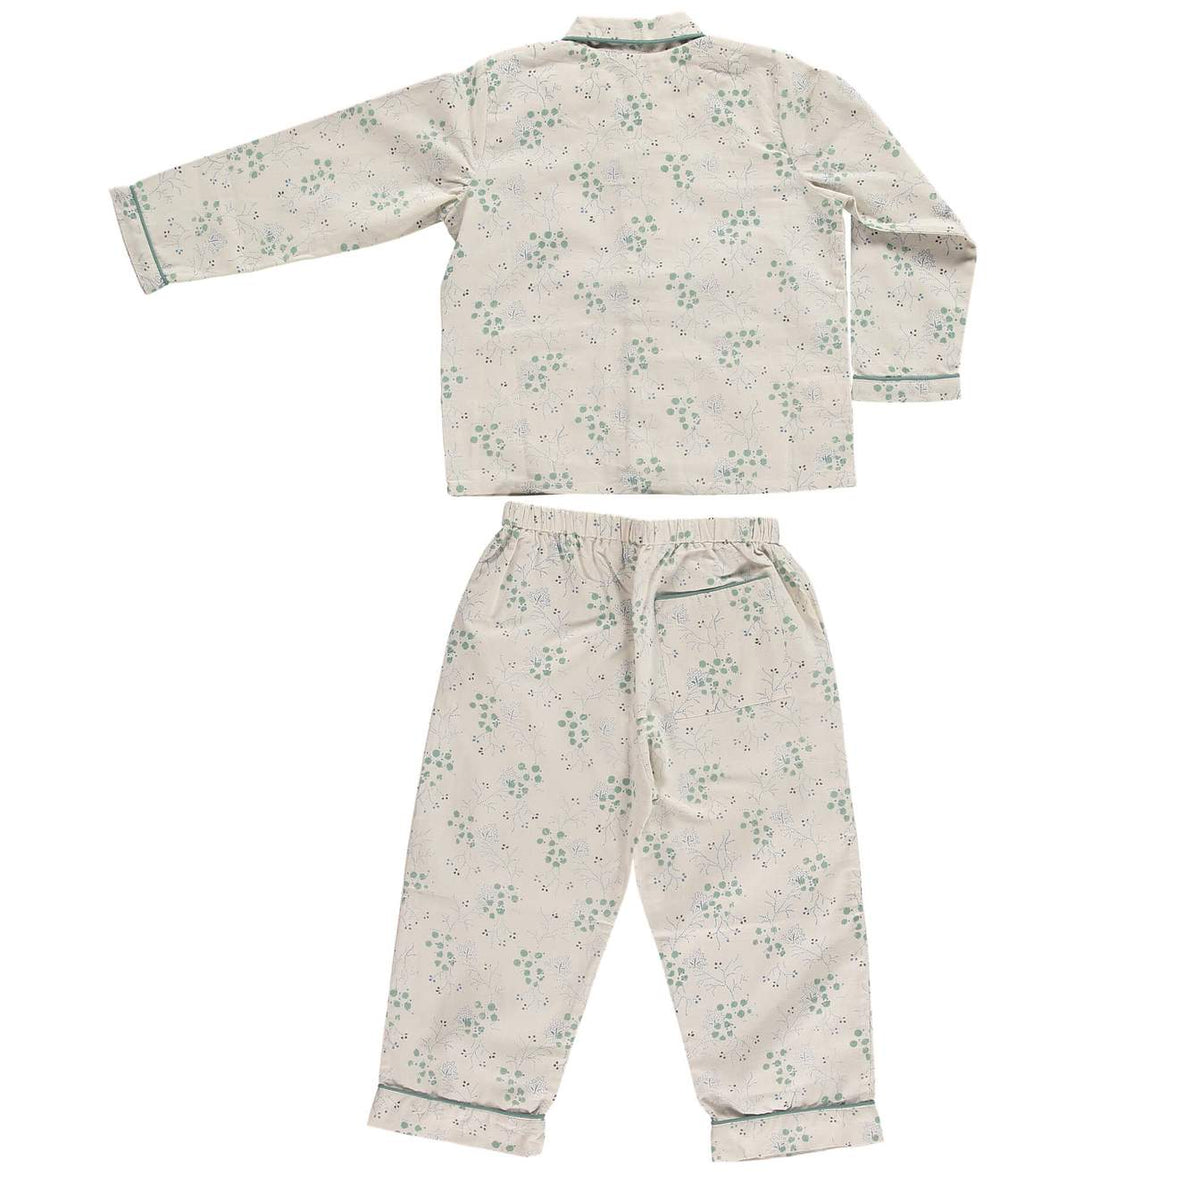 Minako Cornflower Floral Pyjama Set by Camomile London - Maude Kids Decor